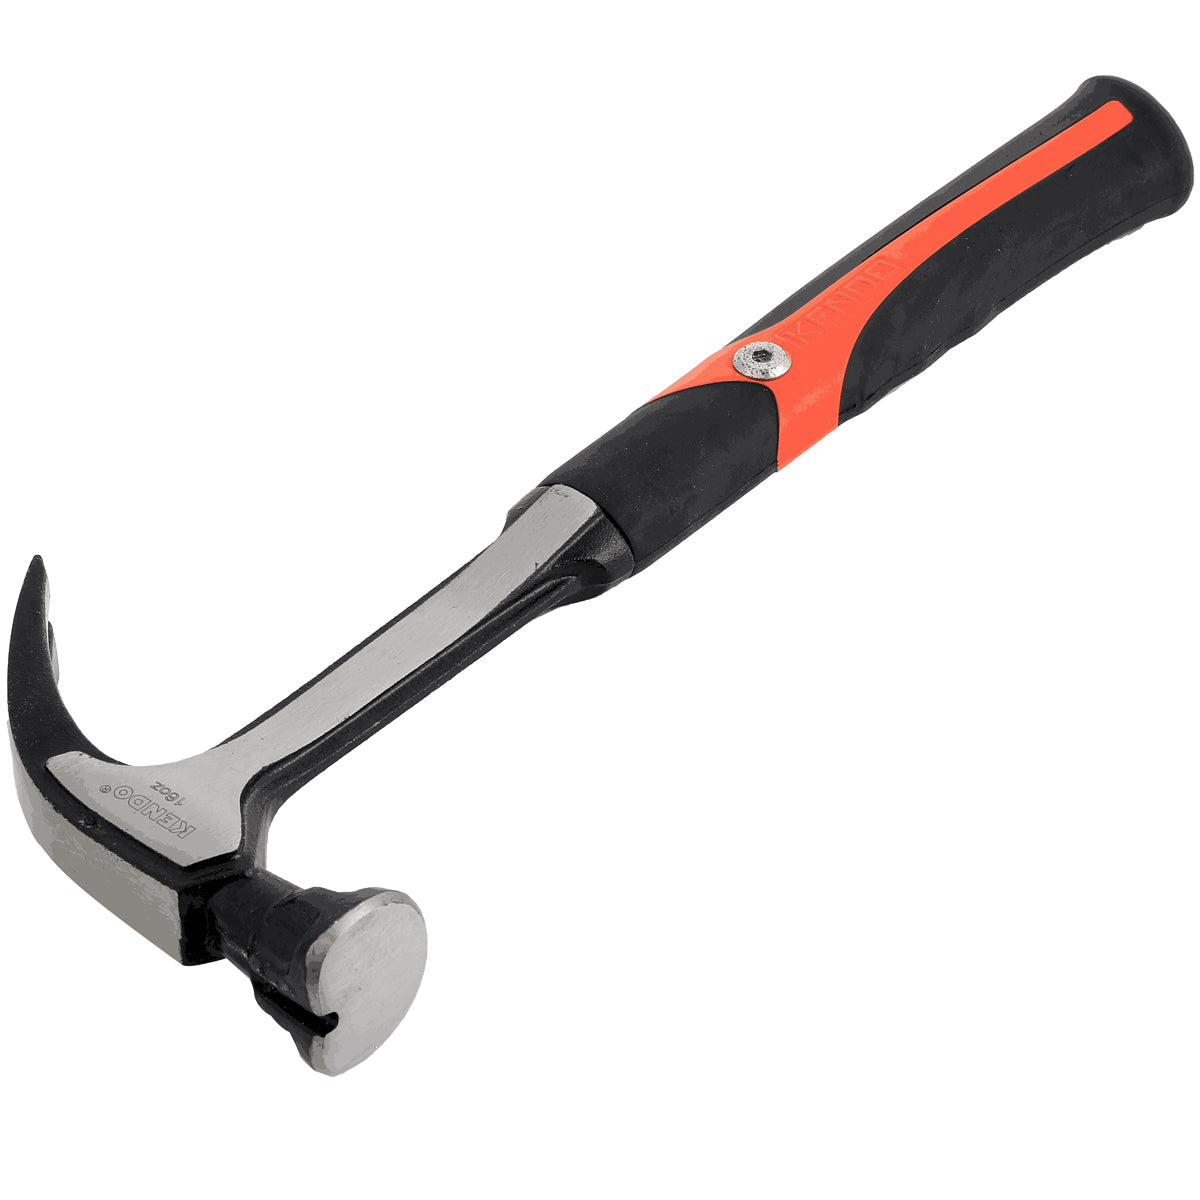 Kendo 16oz Anti-Vibration Claw Hammer